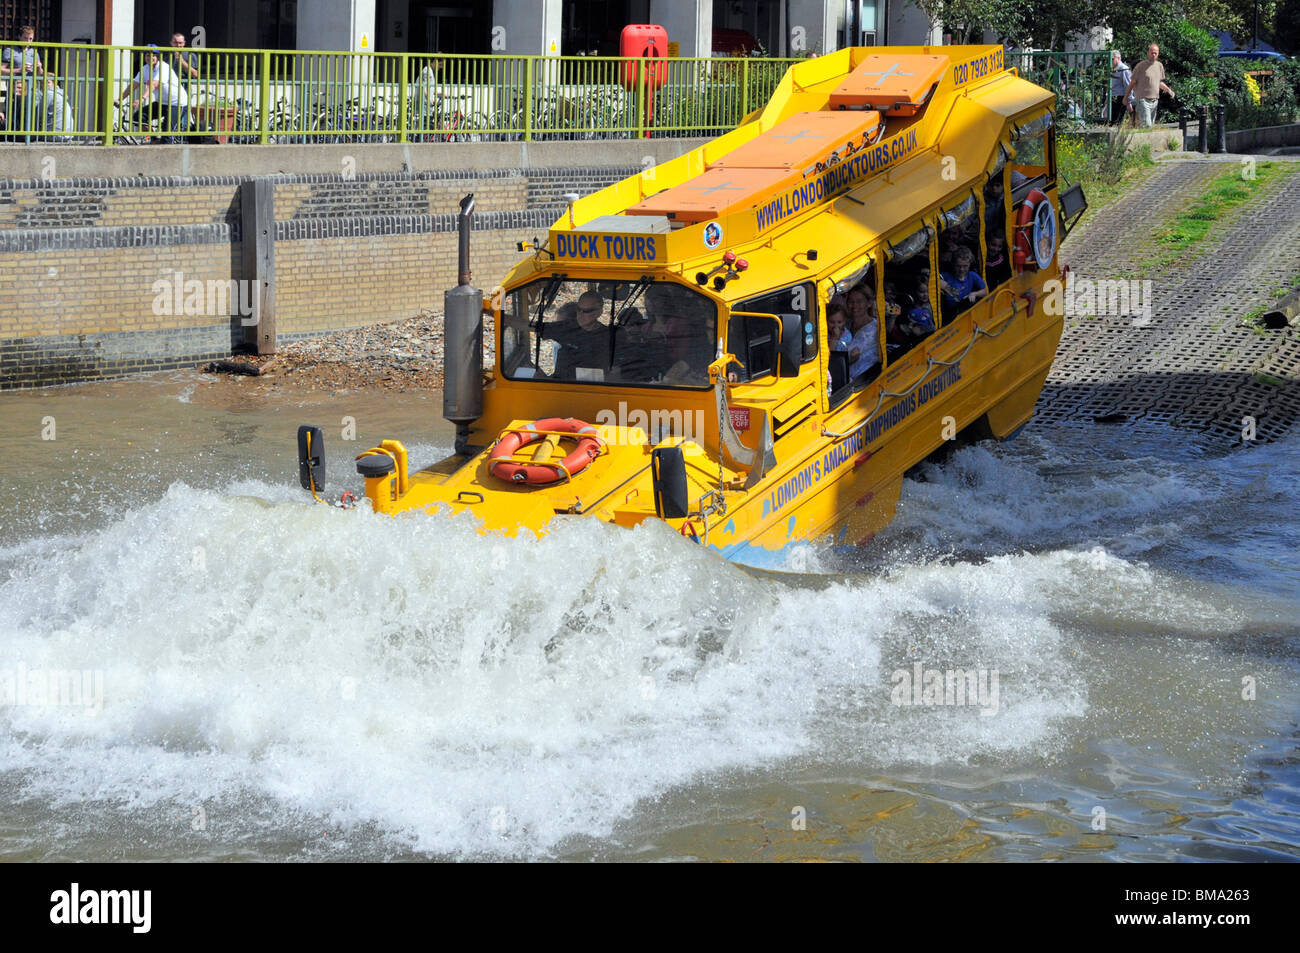 Amphibious Yellow Duck Tours part boat part truck 